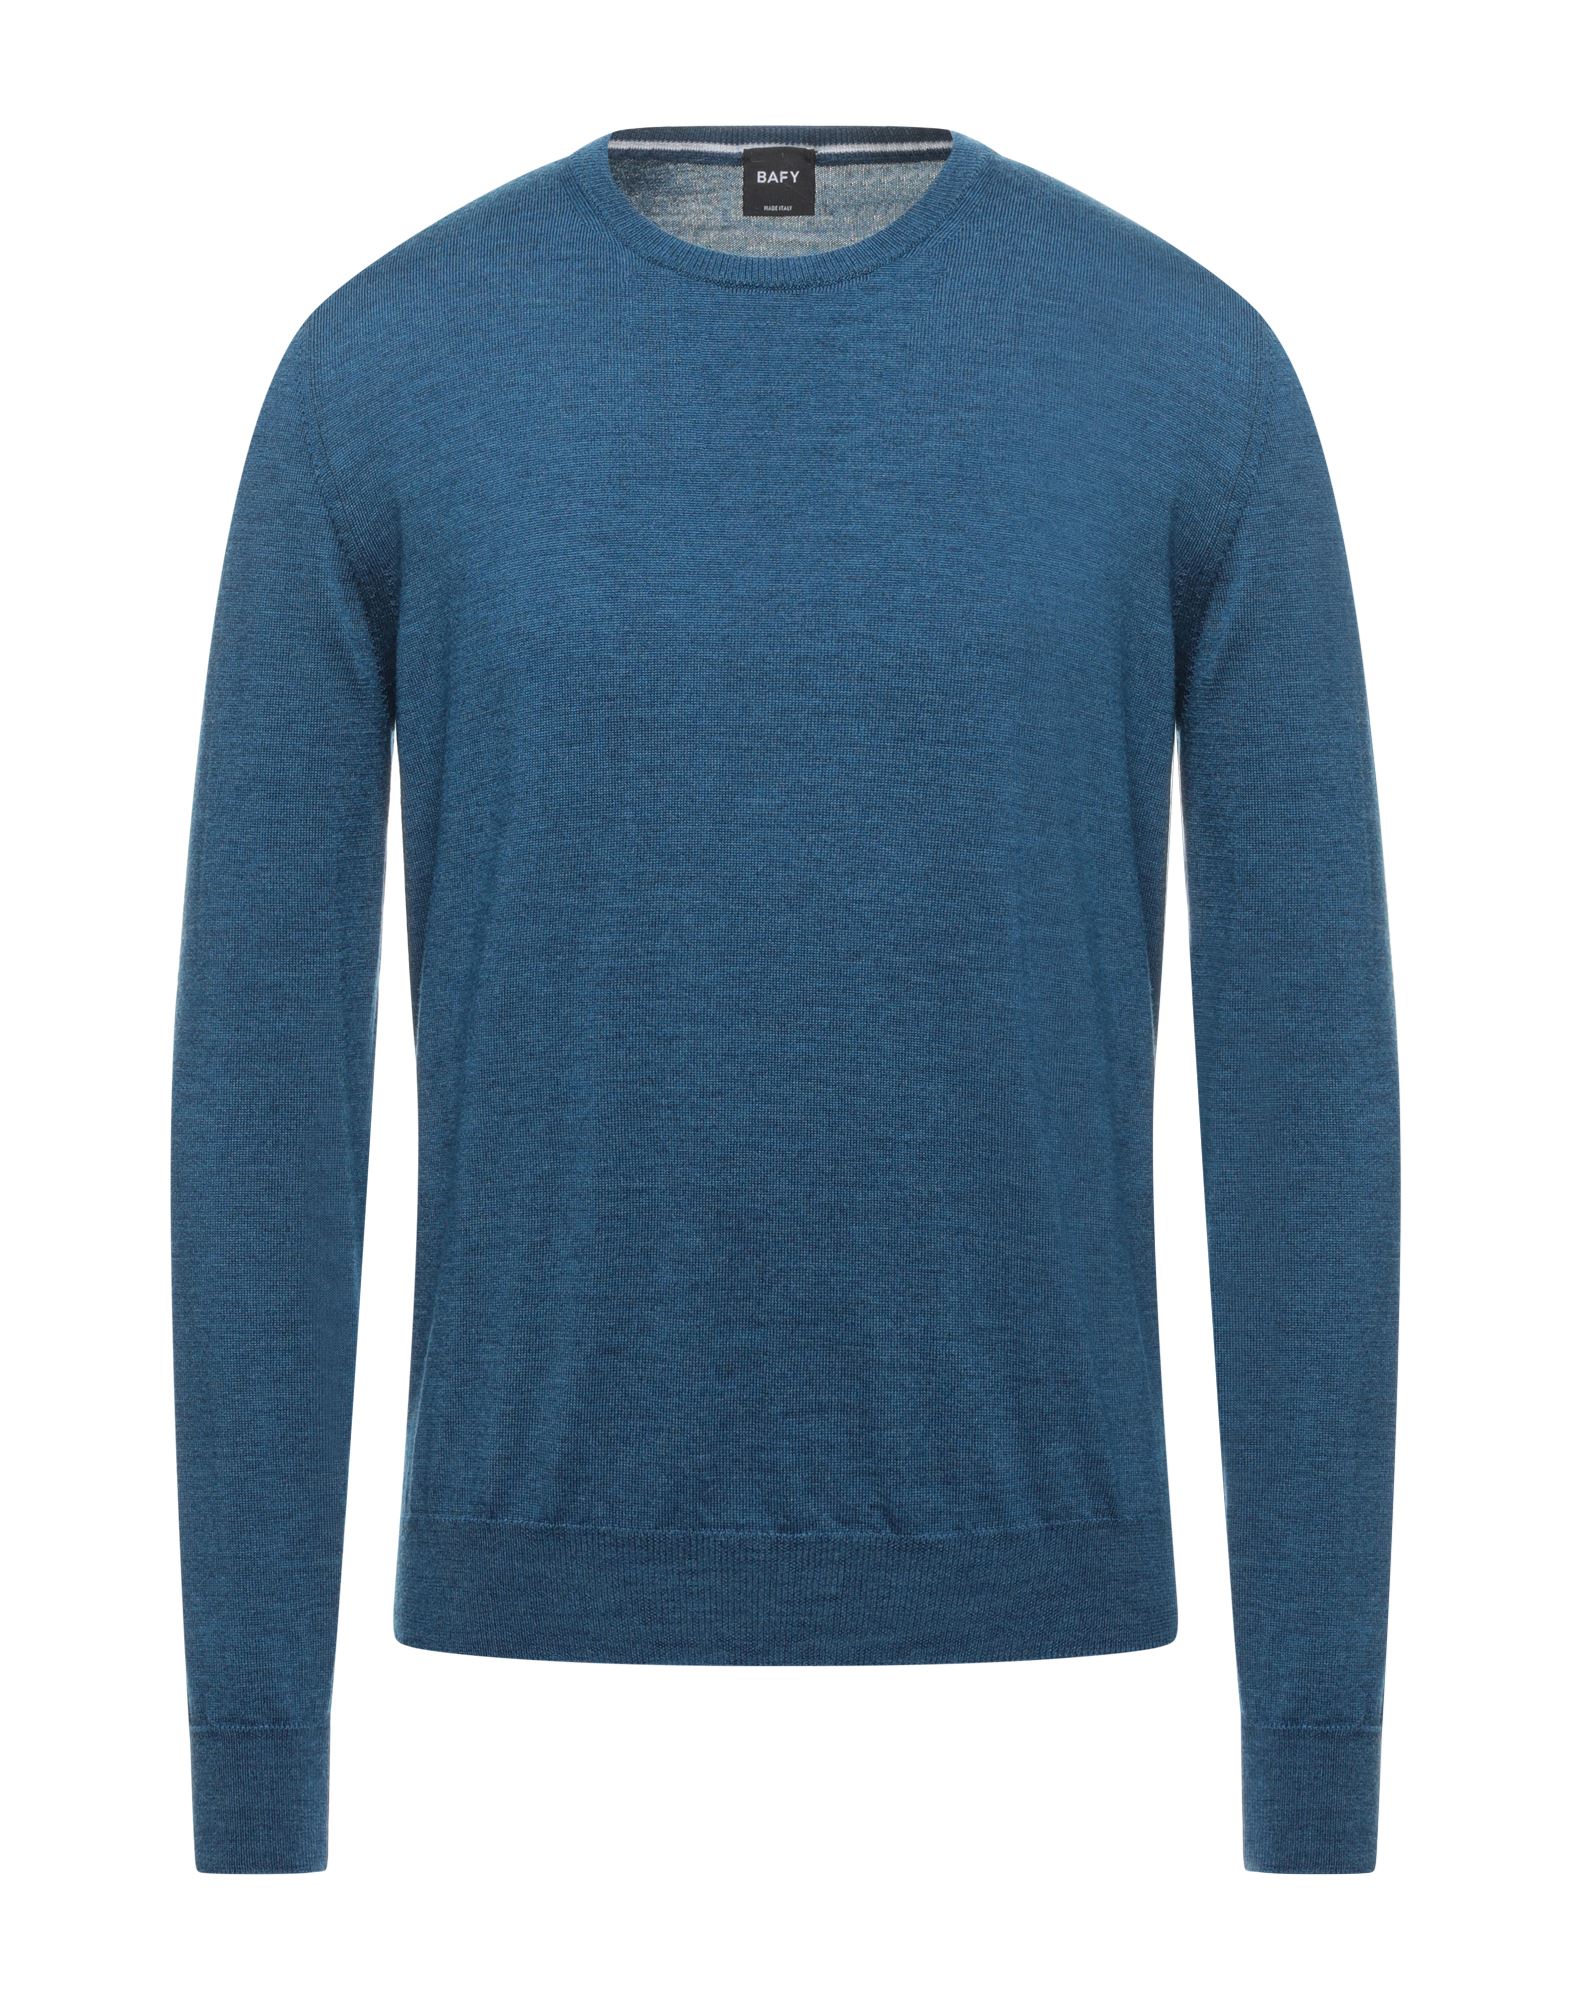 Bafy Sweaters In Blue